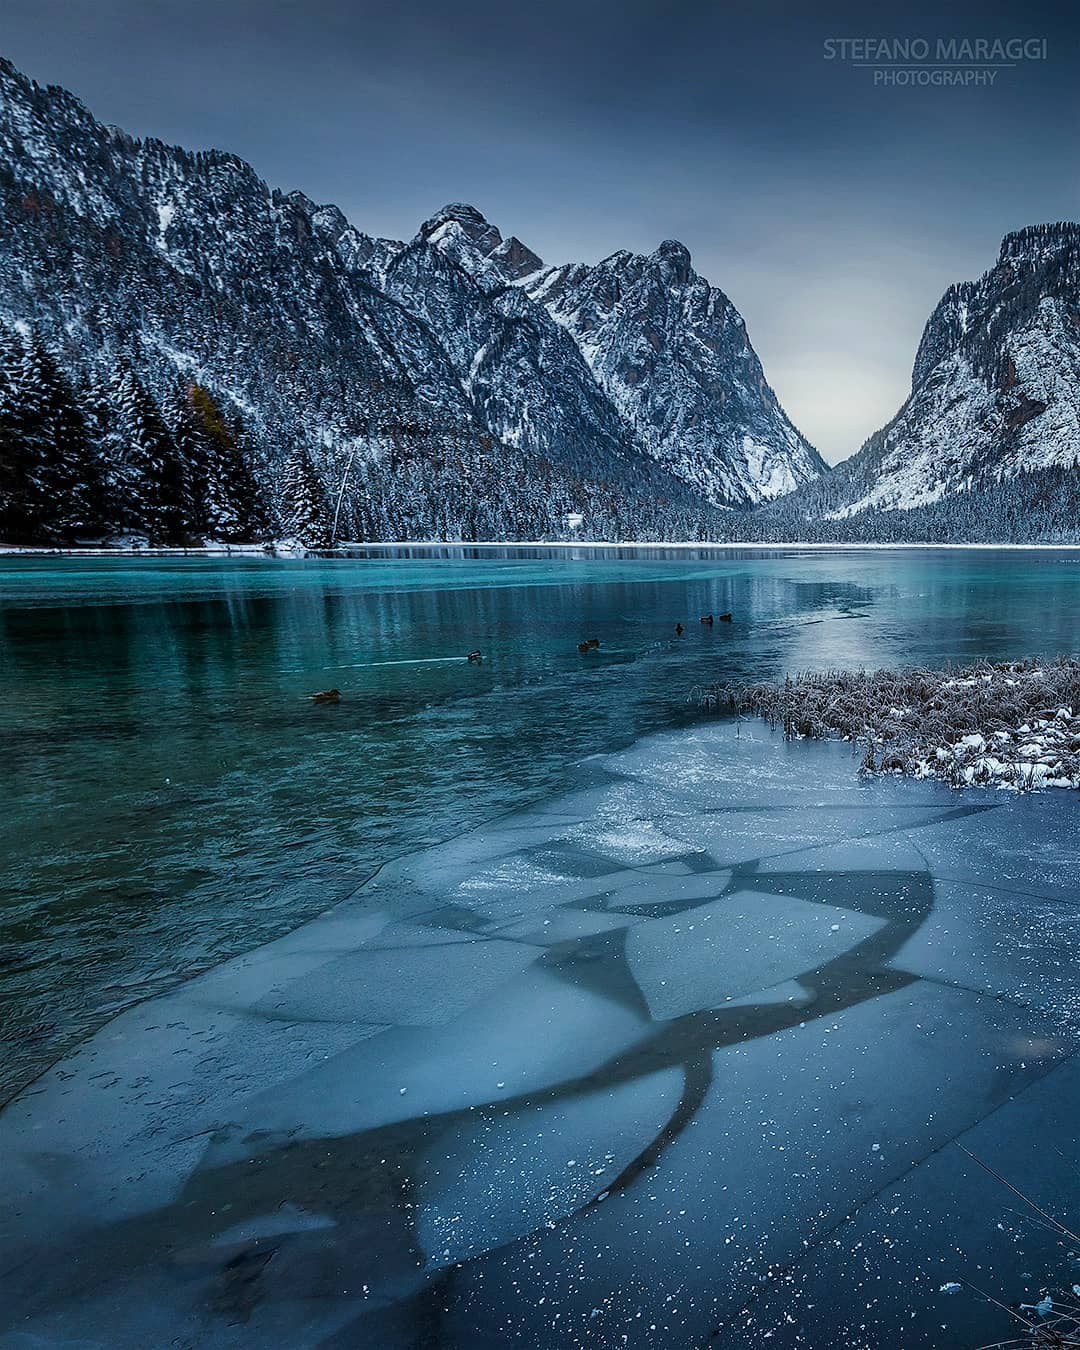 Великолепные зимние пейзажи в Доломитовых Альпах от Стефано Мараджи